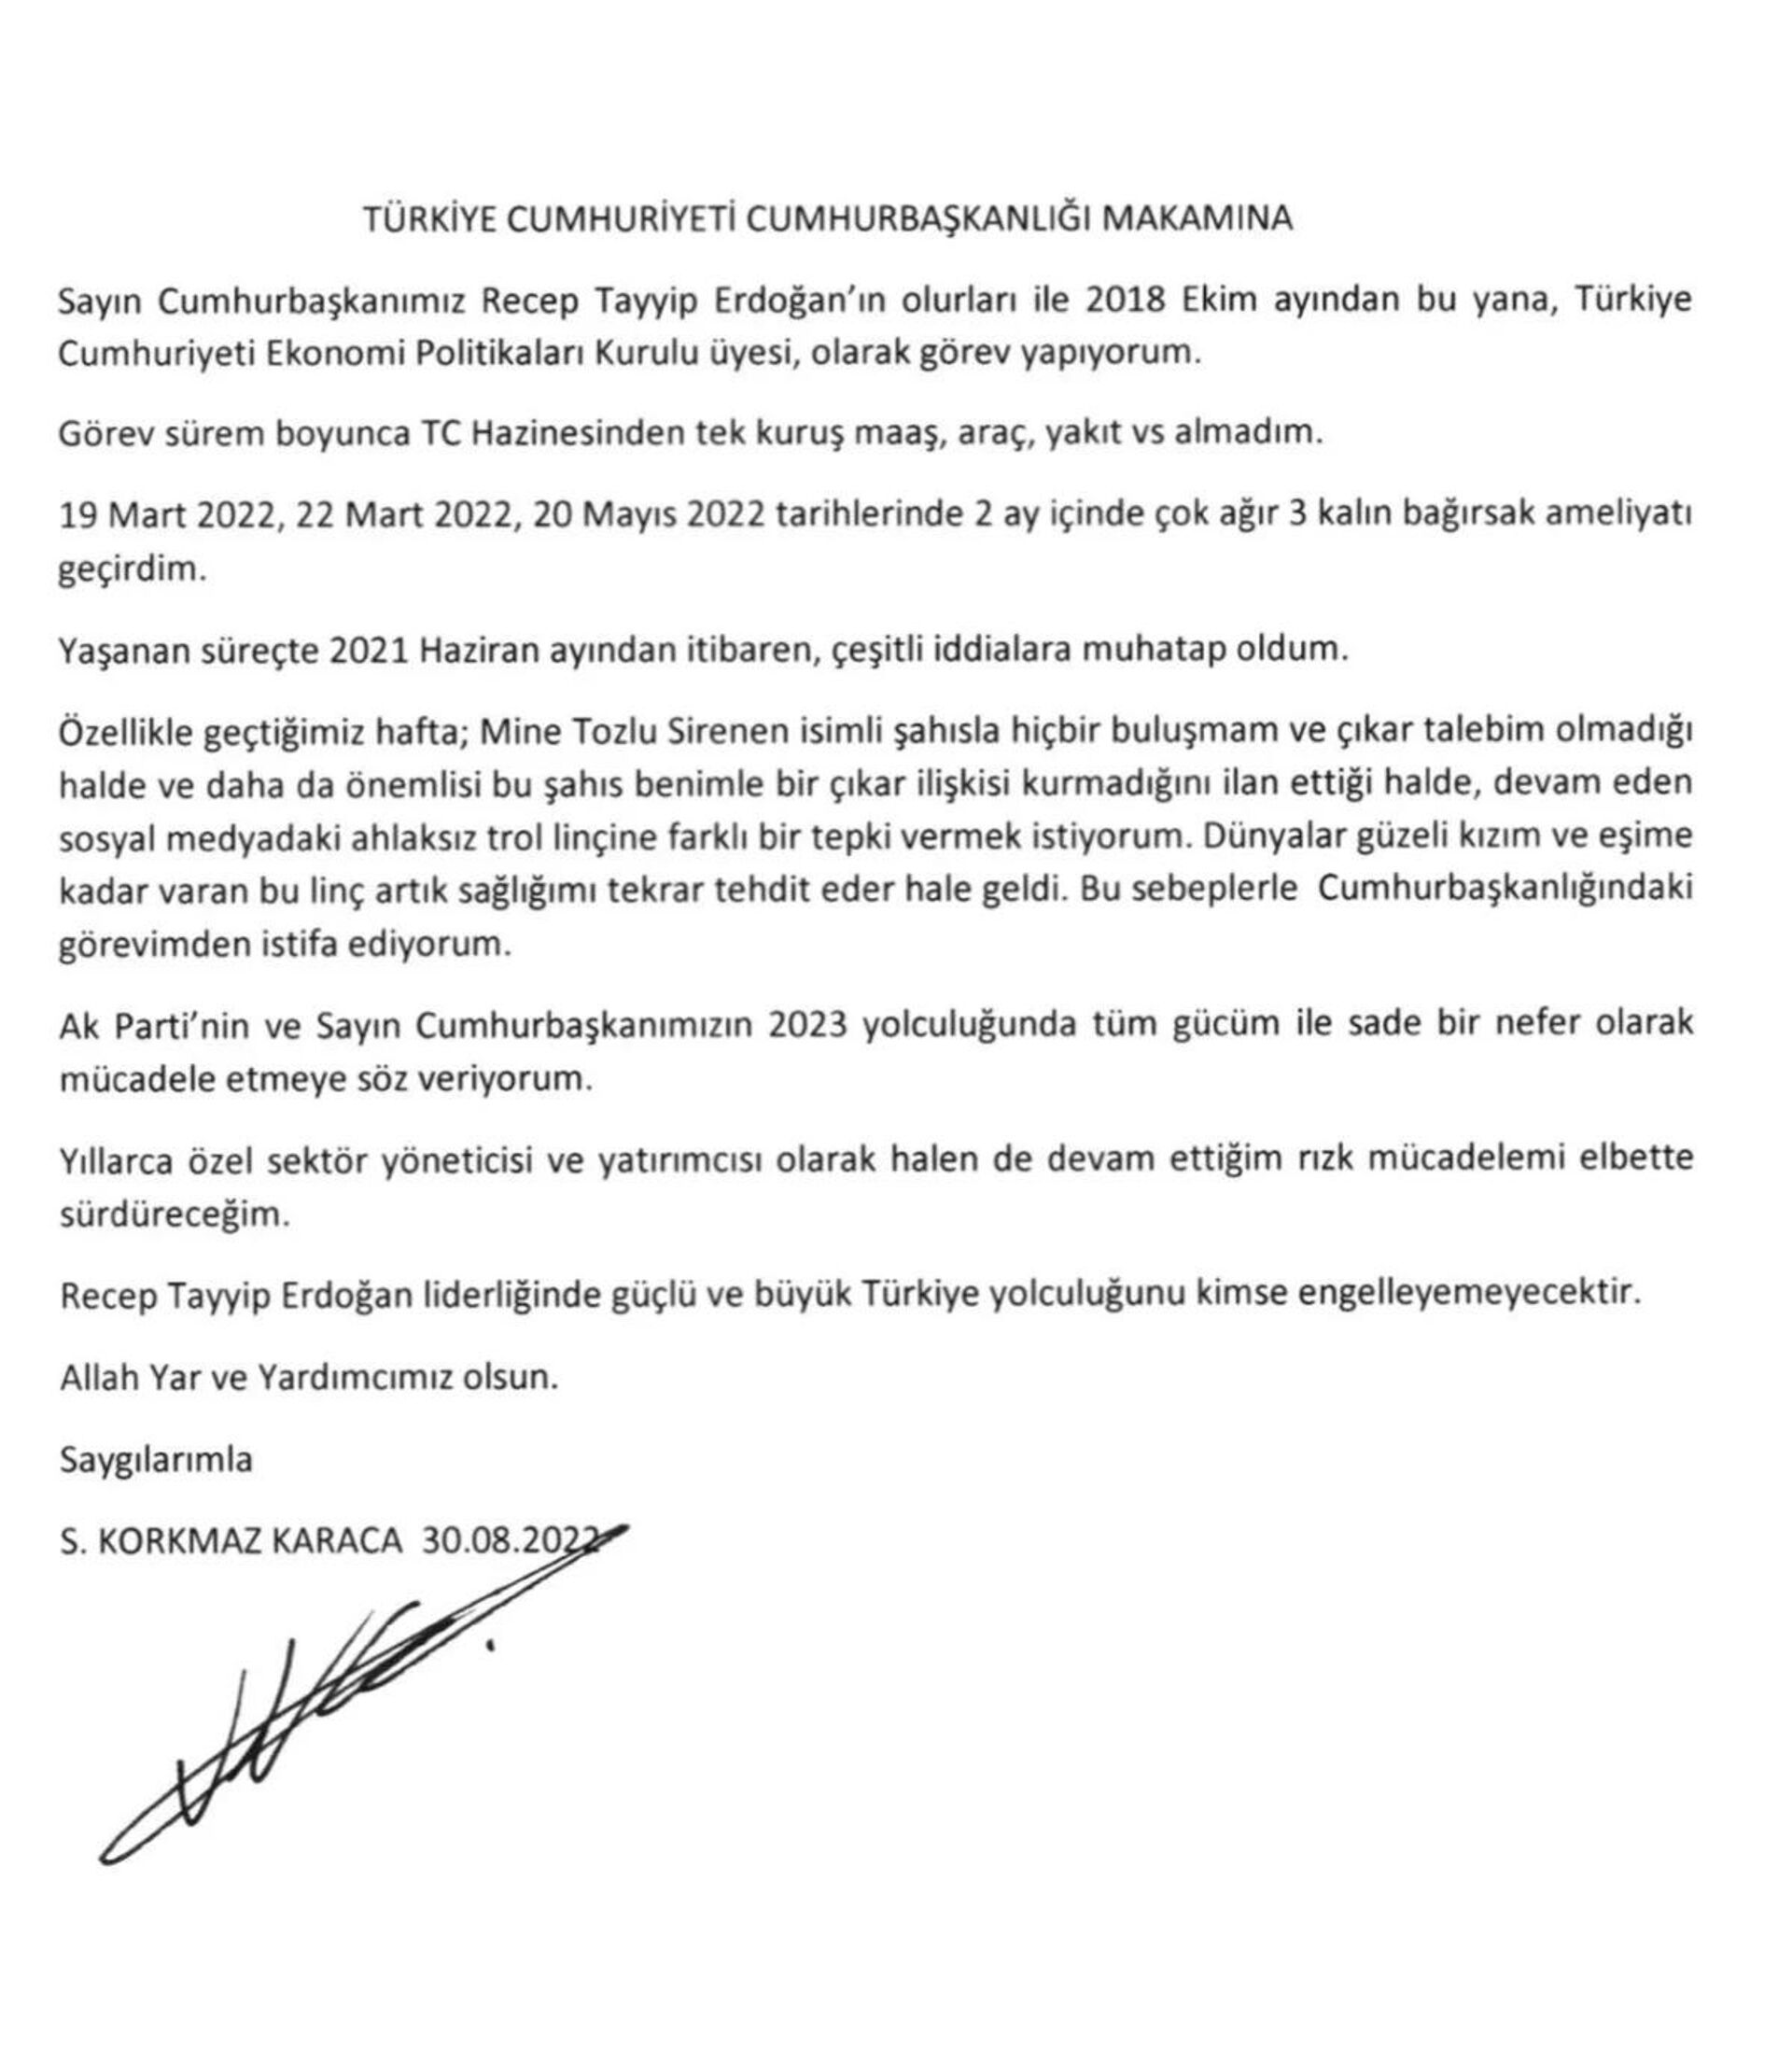 Korkmaz Karaca istifa etti - Sputnik Türkiye, 1920, 30.08.2022